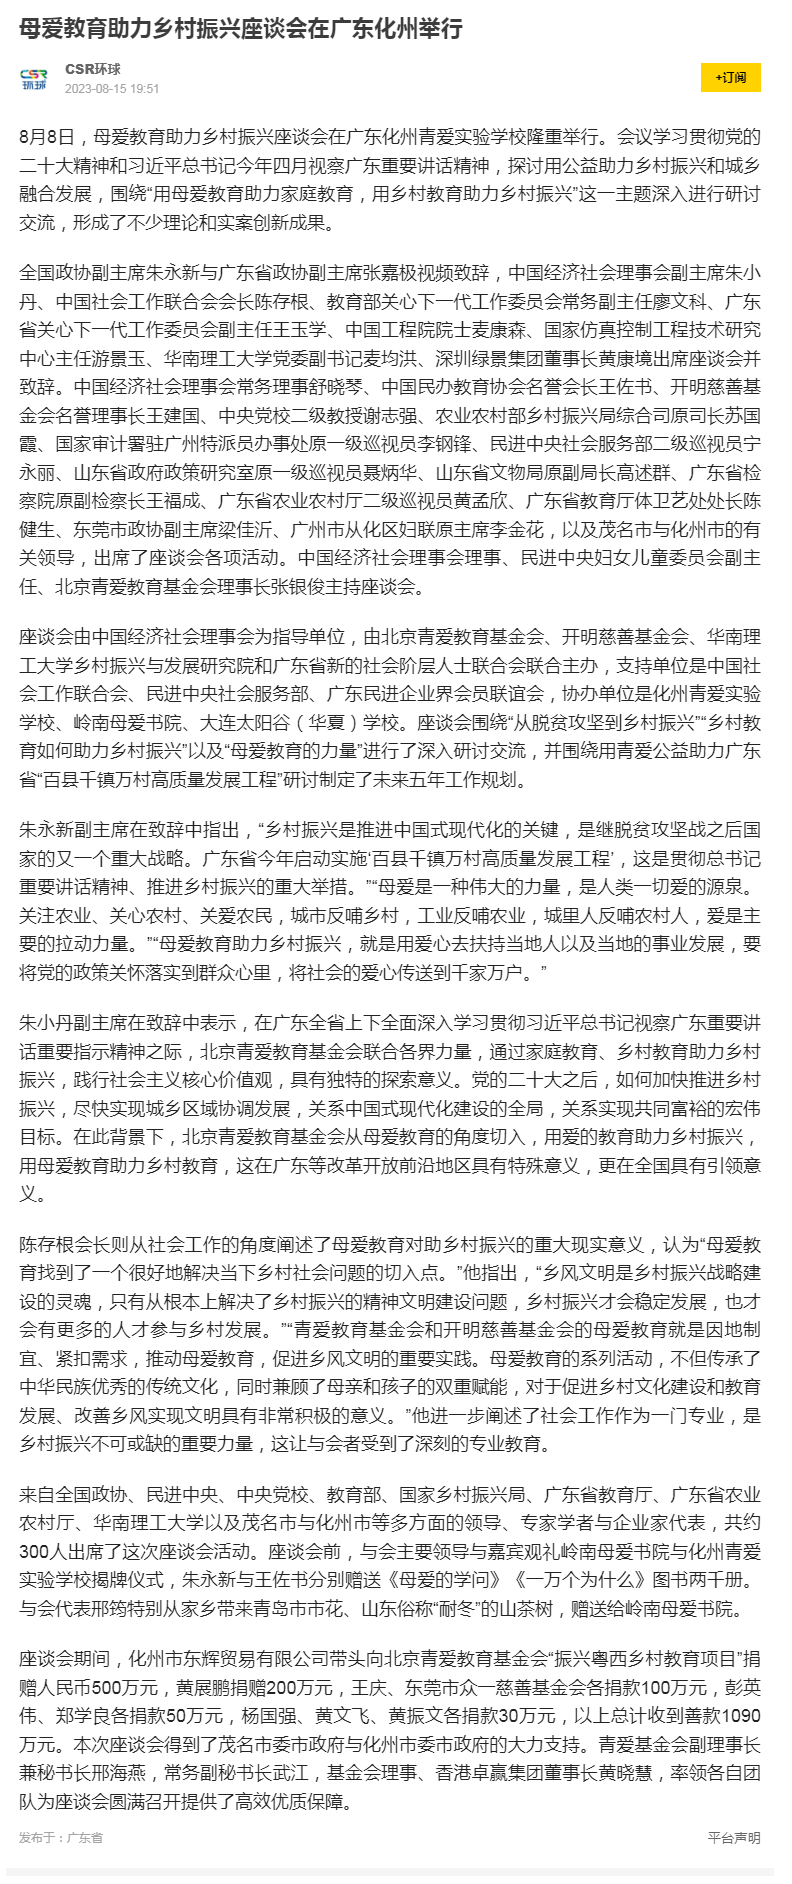 母爱教育助力乡村振兴座谈会在广东化州举行_手机搜狐网